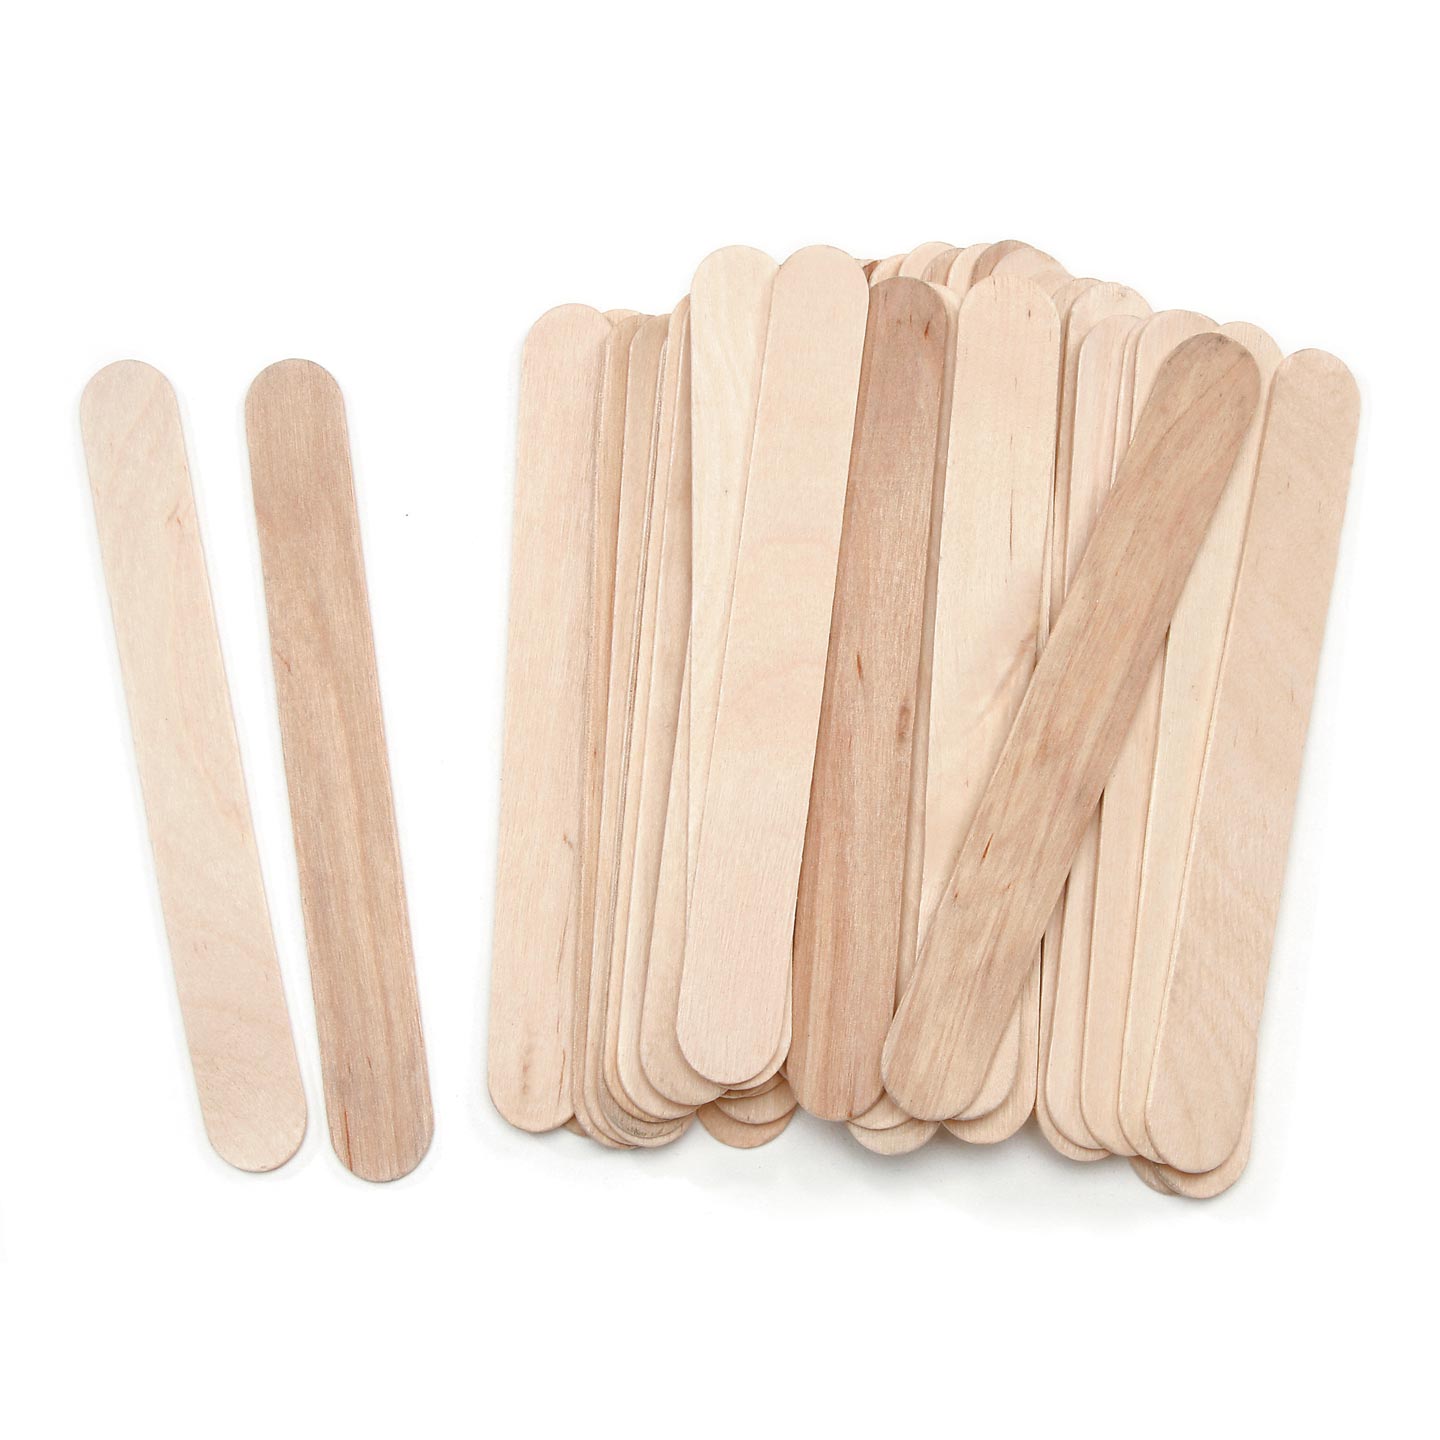 Popsicle Sticks - Craft Sticks